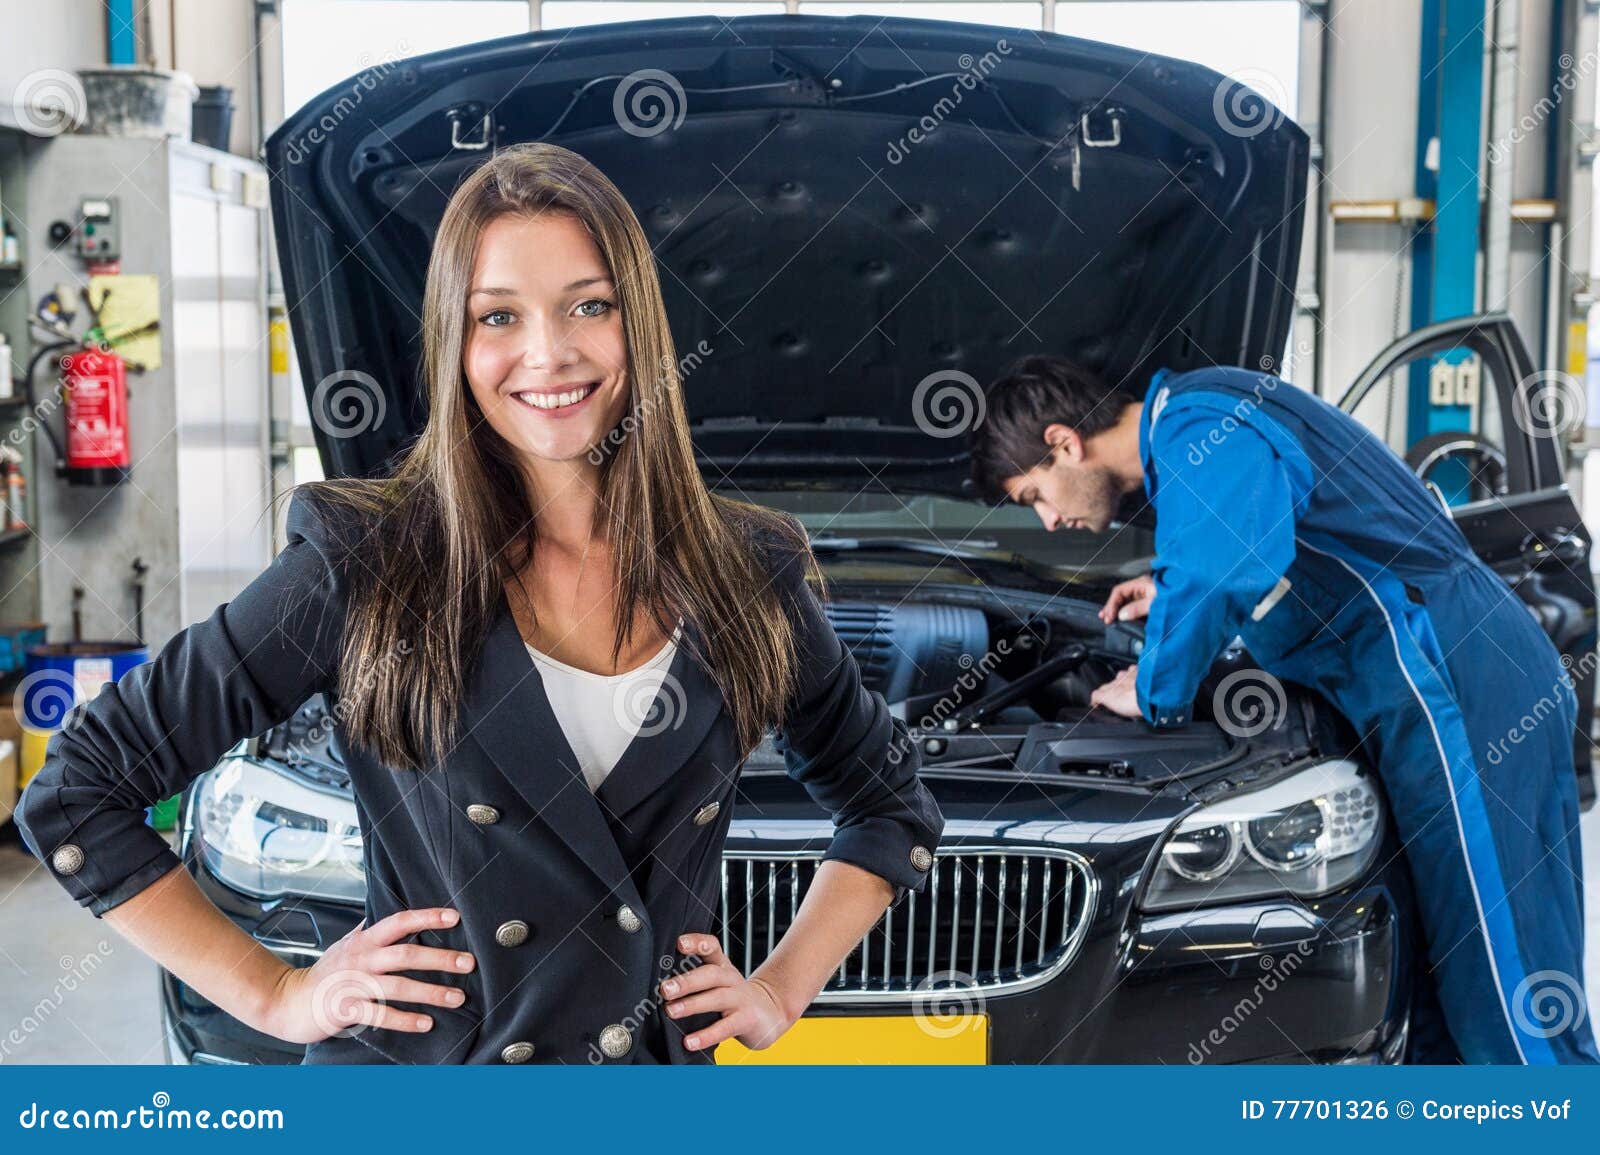 Клиентка и девушка. Автомастерская авто девушка. Гид машина. Девушка ремонтирует. Ремонт машины фото.